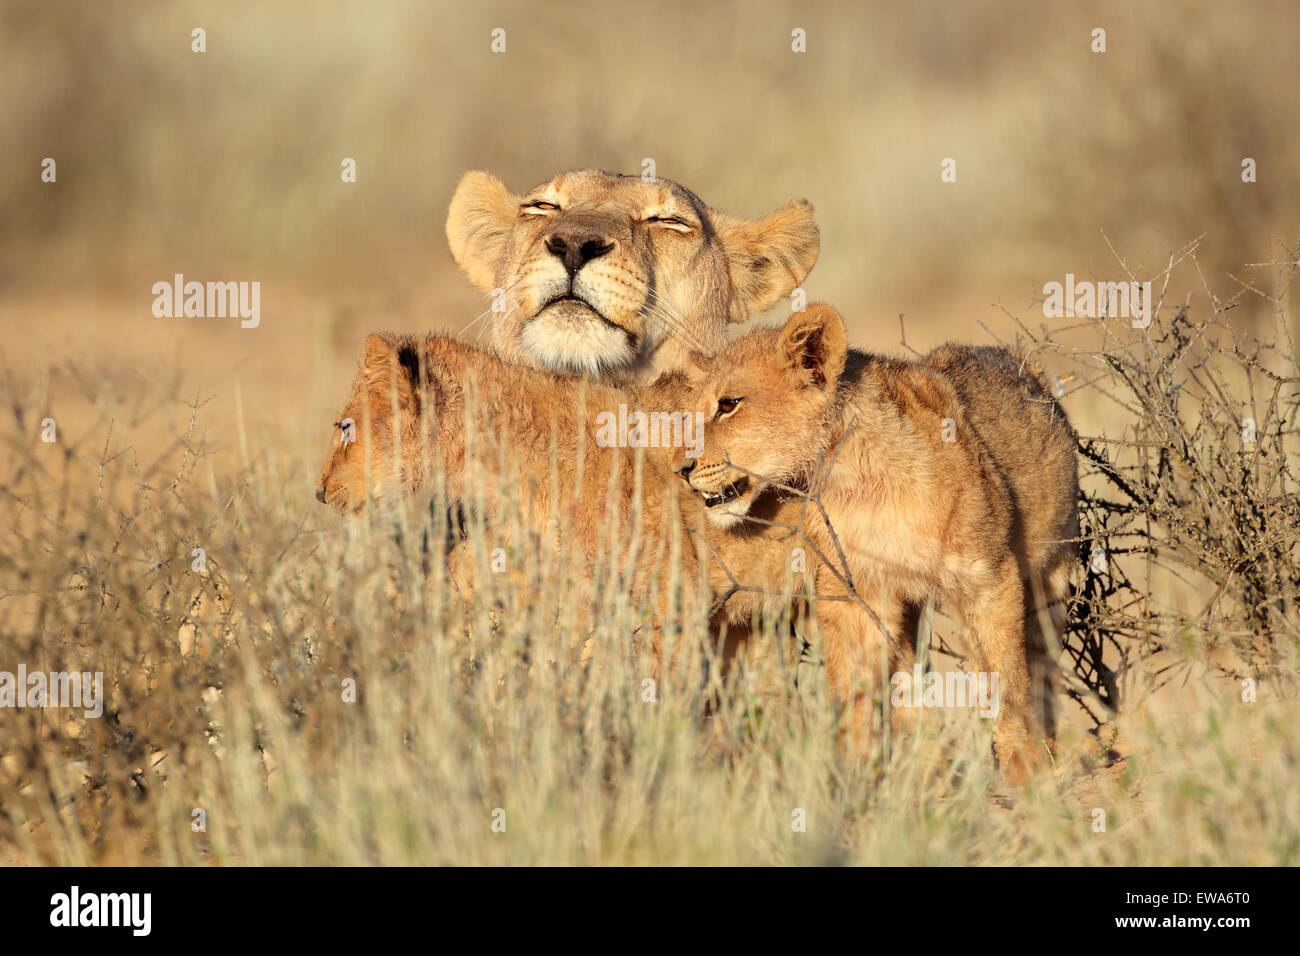 Lioness with young lion cubs (Panthera leo), Kalahari desert, South Africa Stock Photo